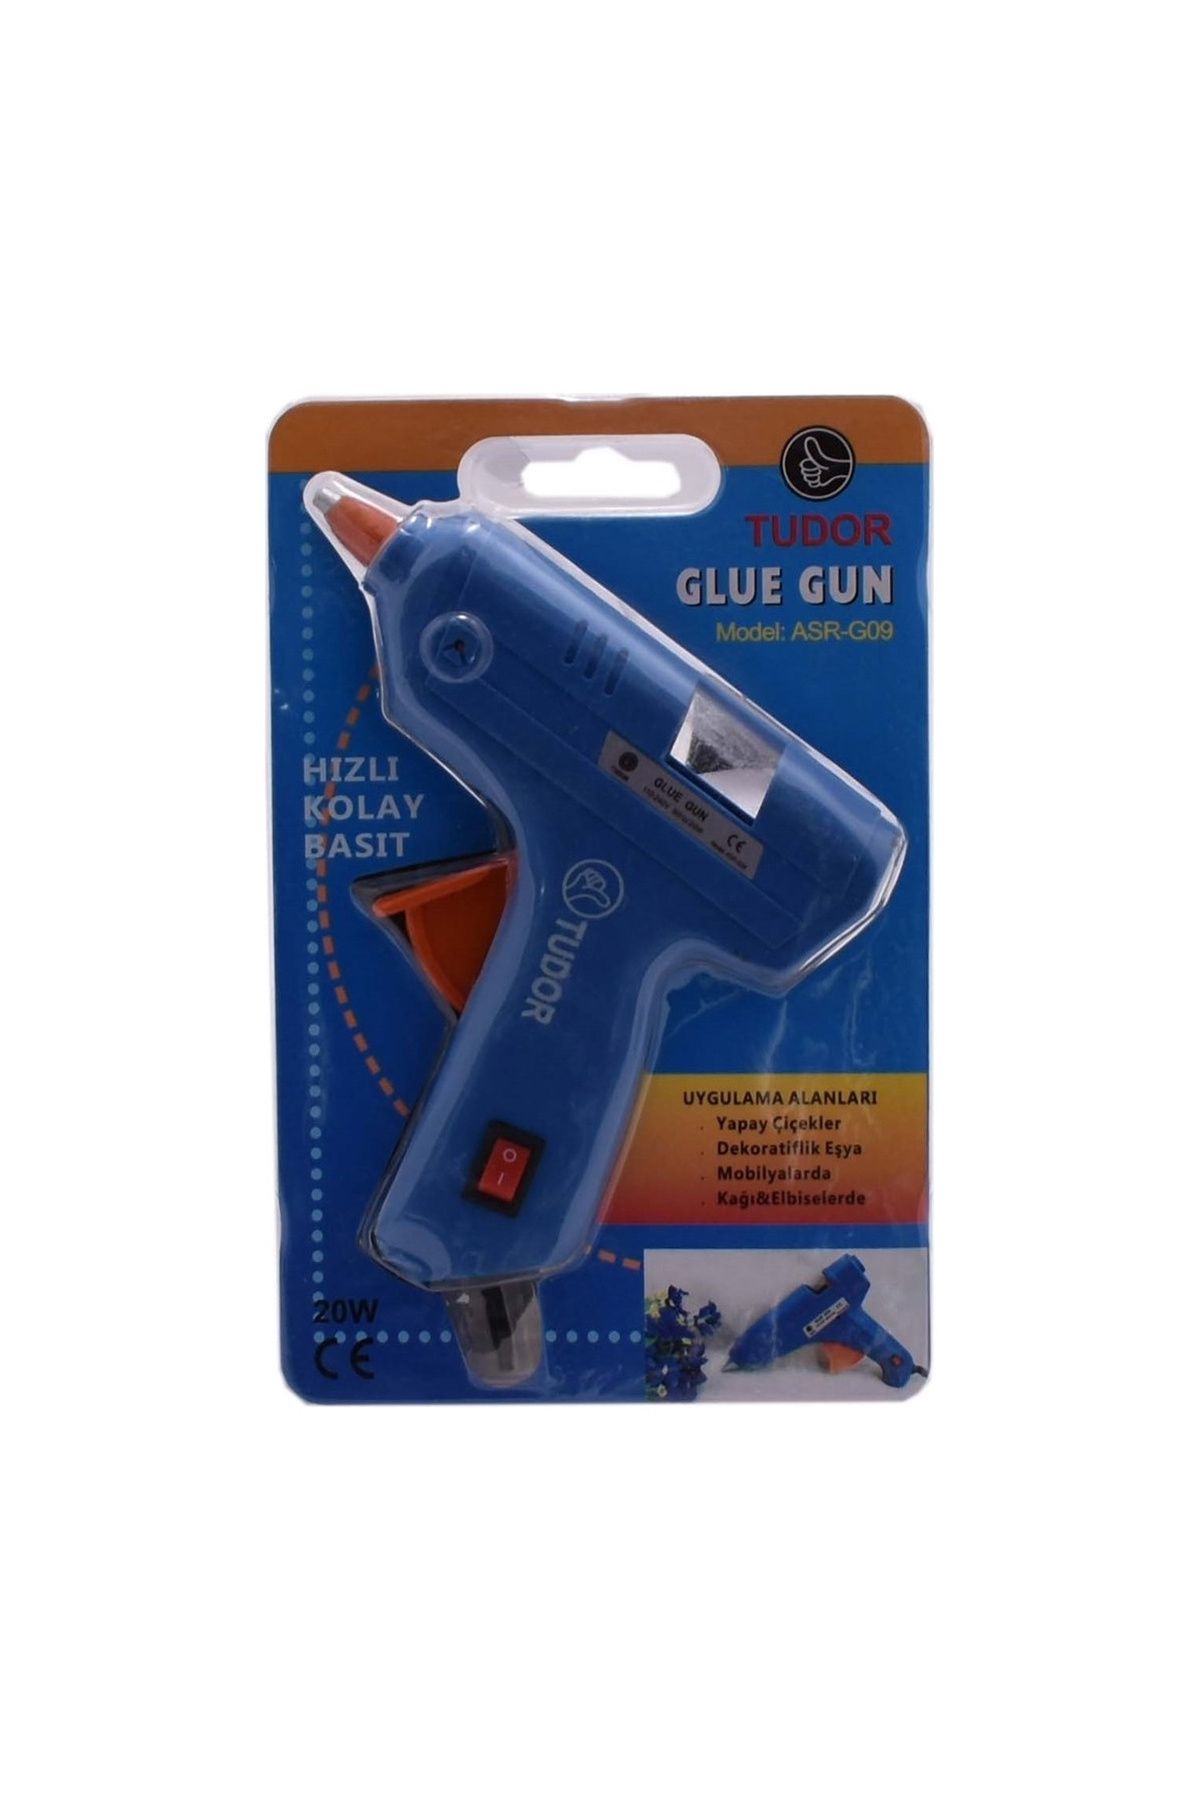 CadGo Küçük Mum Silikon Tabancası Asr-G09 - Glue Gun